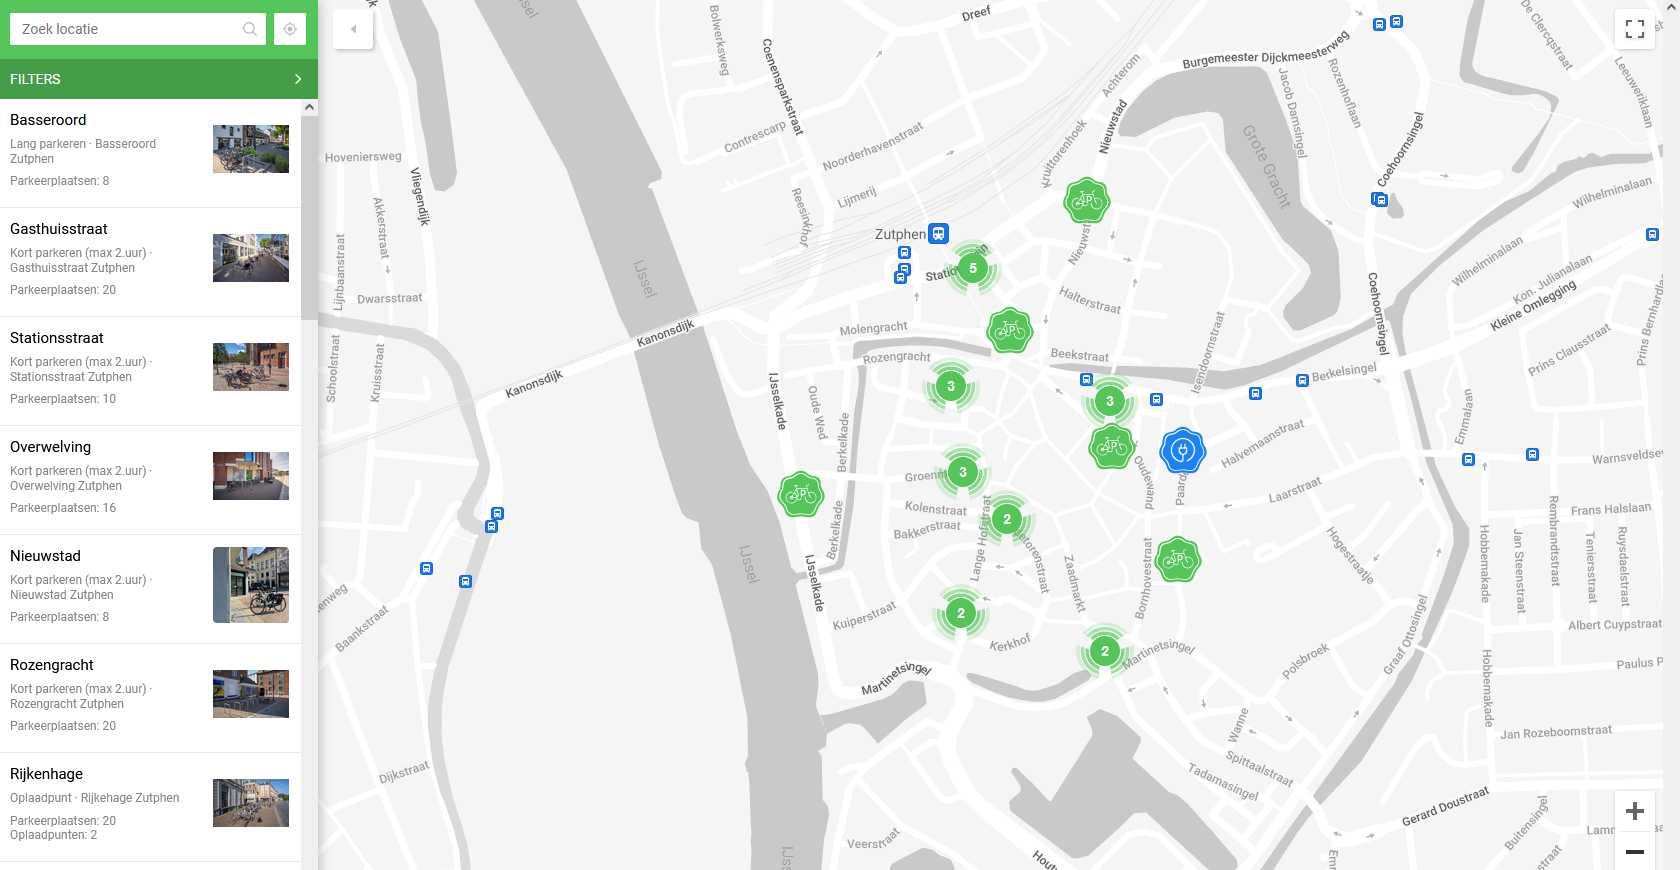 Link naar kaart met overzicht fietsparkeerplekken binnenstad